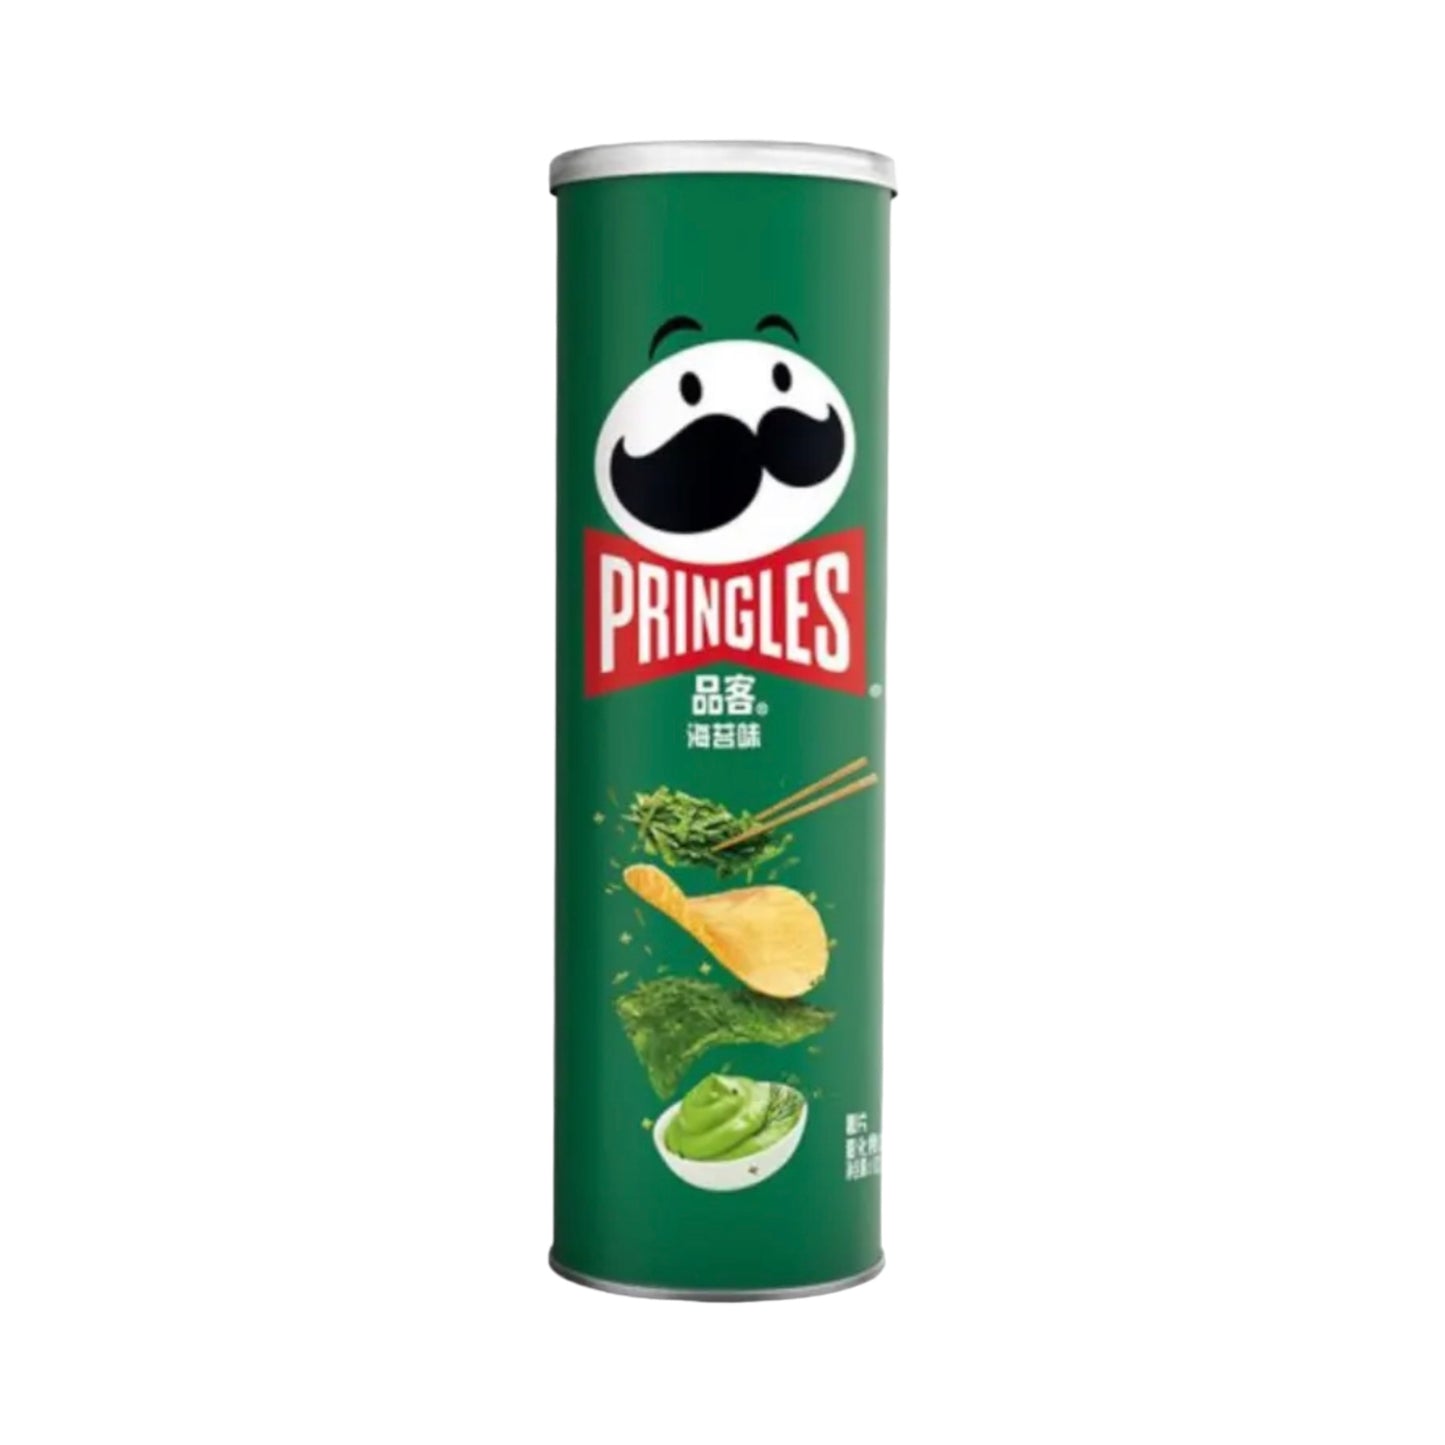 Pringles Seaweed (China) - 110g